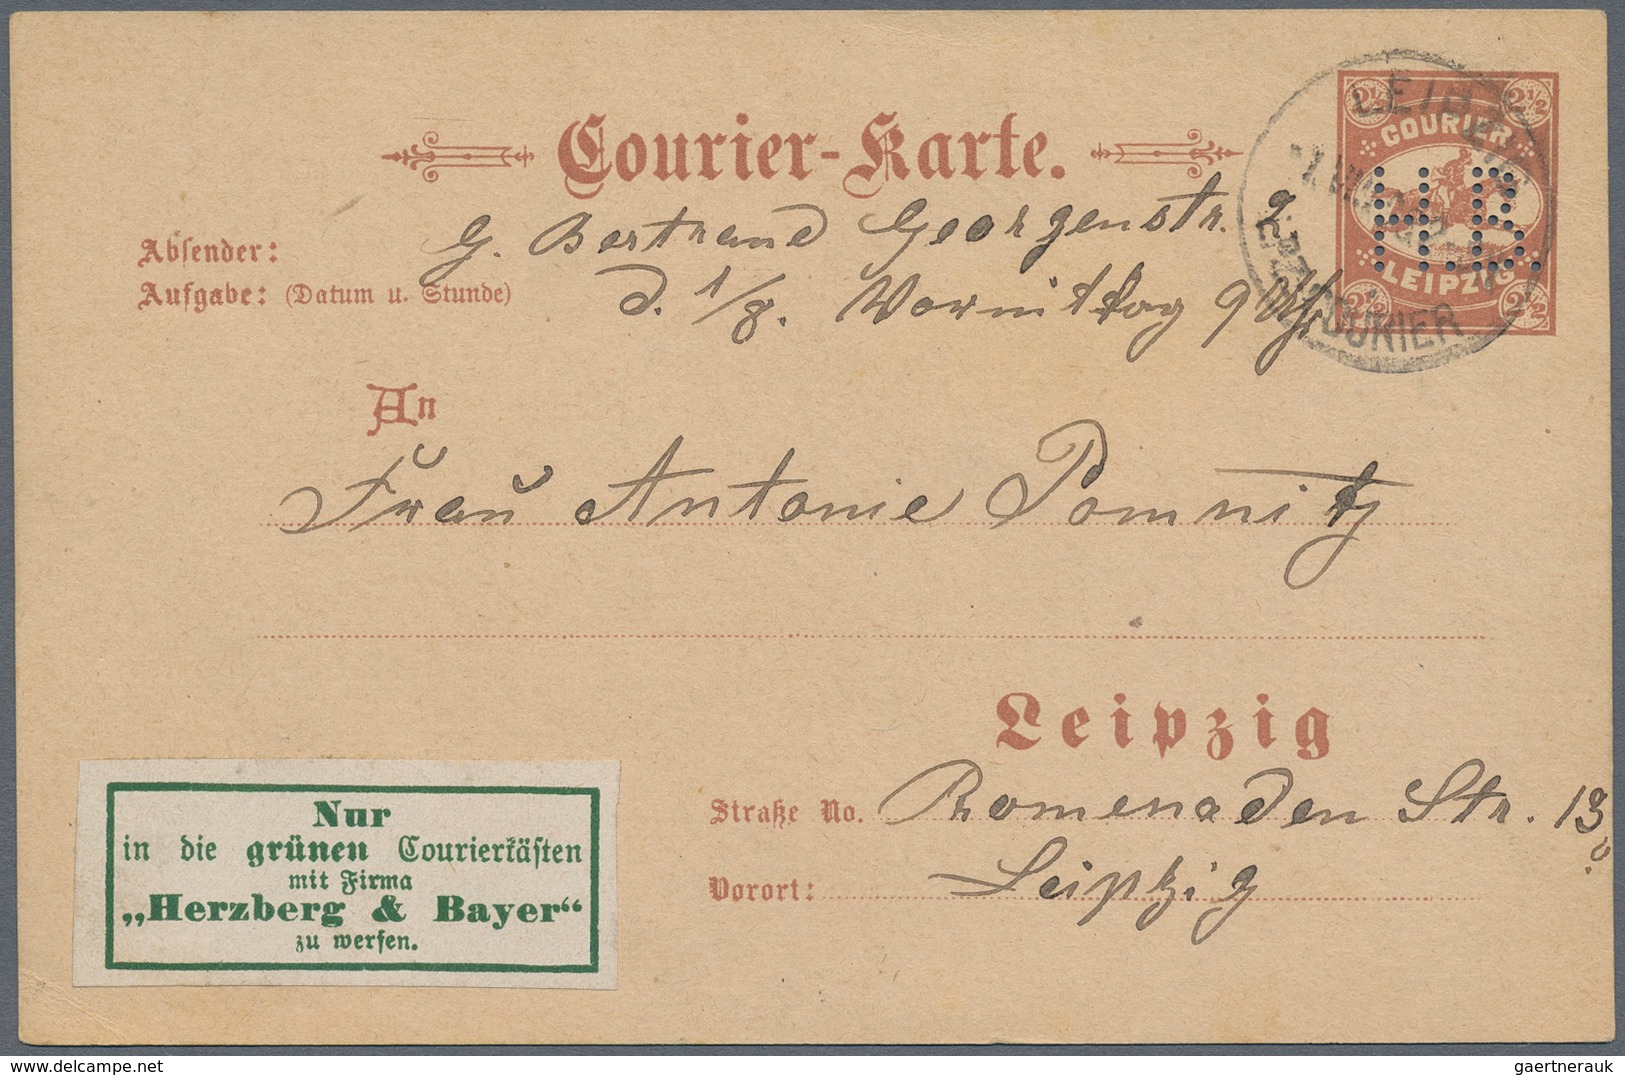 Deutsches Reich - Privatpost (Stadtpost): LEIPZIG: Courier H. B., Courier-Karte 21/2 Pfg. Braun, 1.8 - Private & Lokale Post